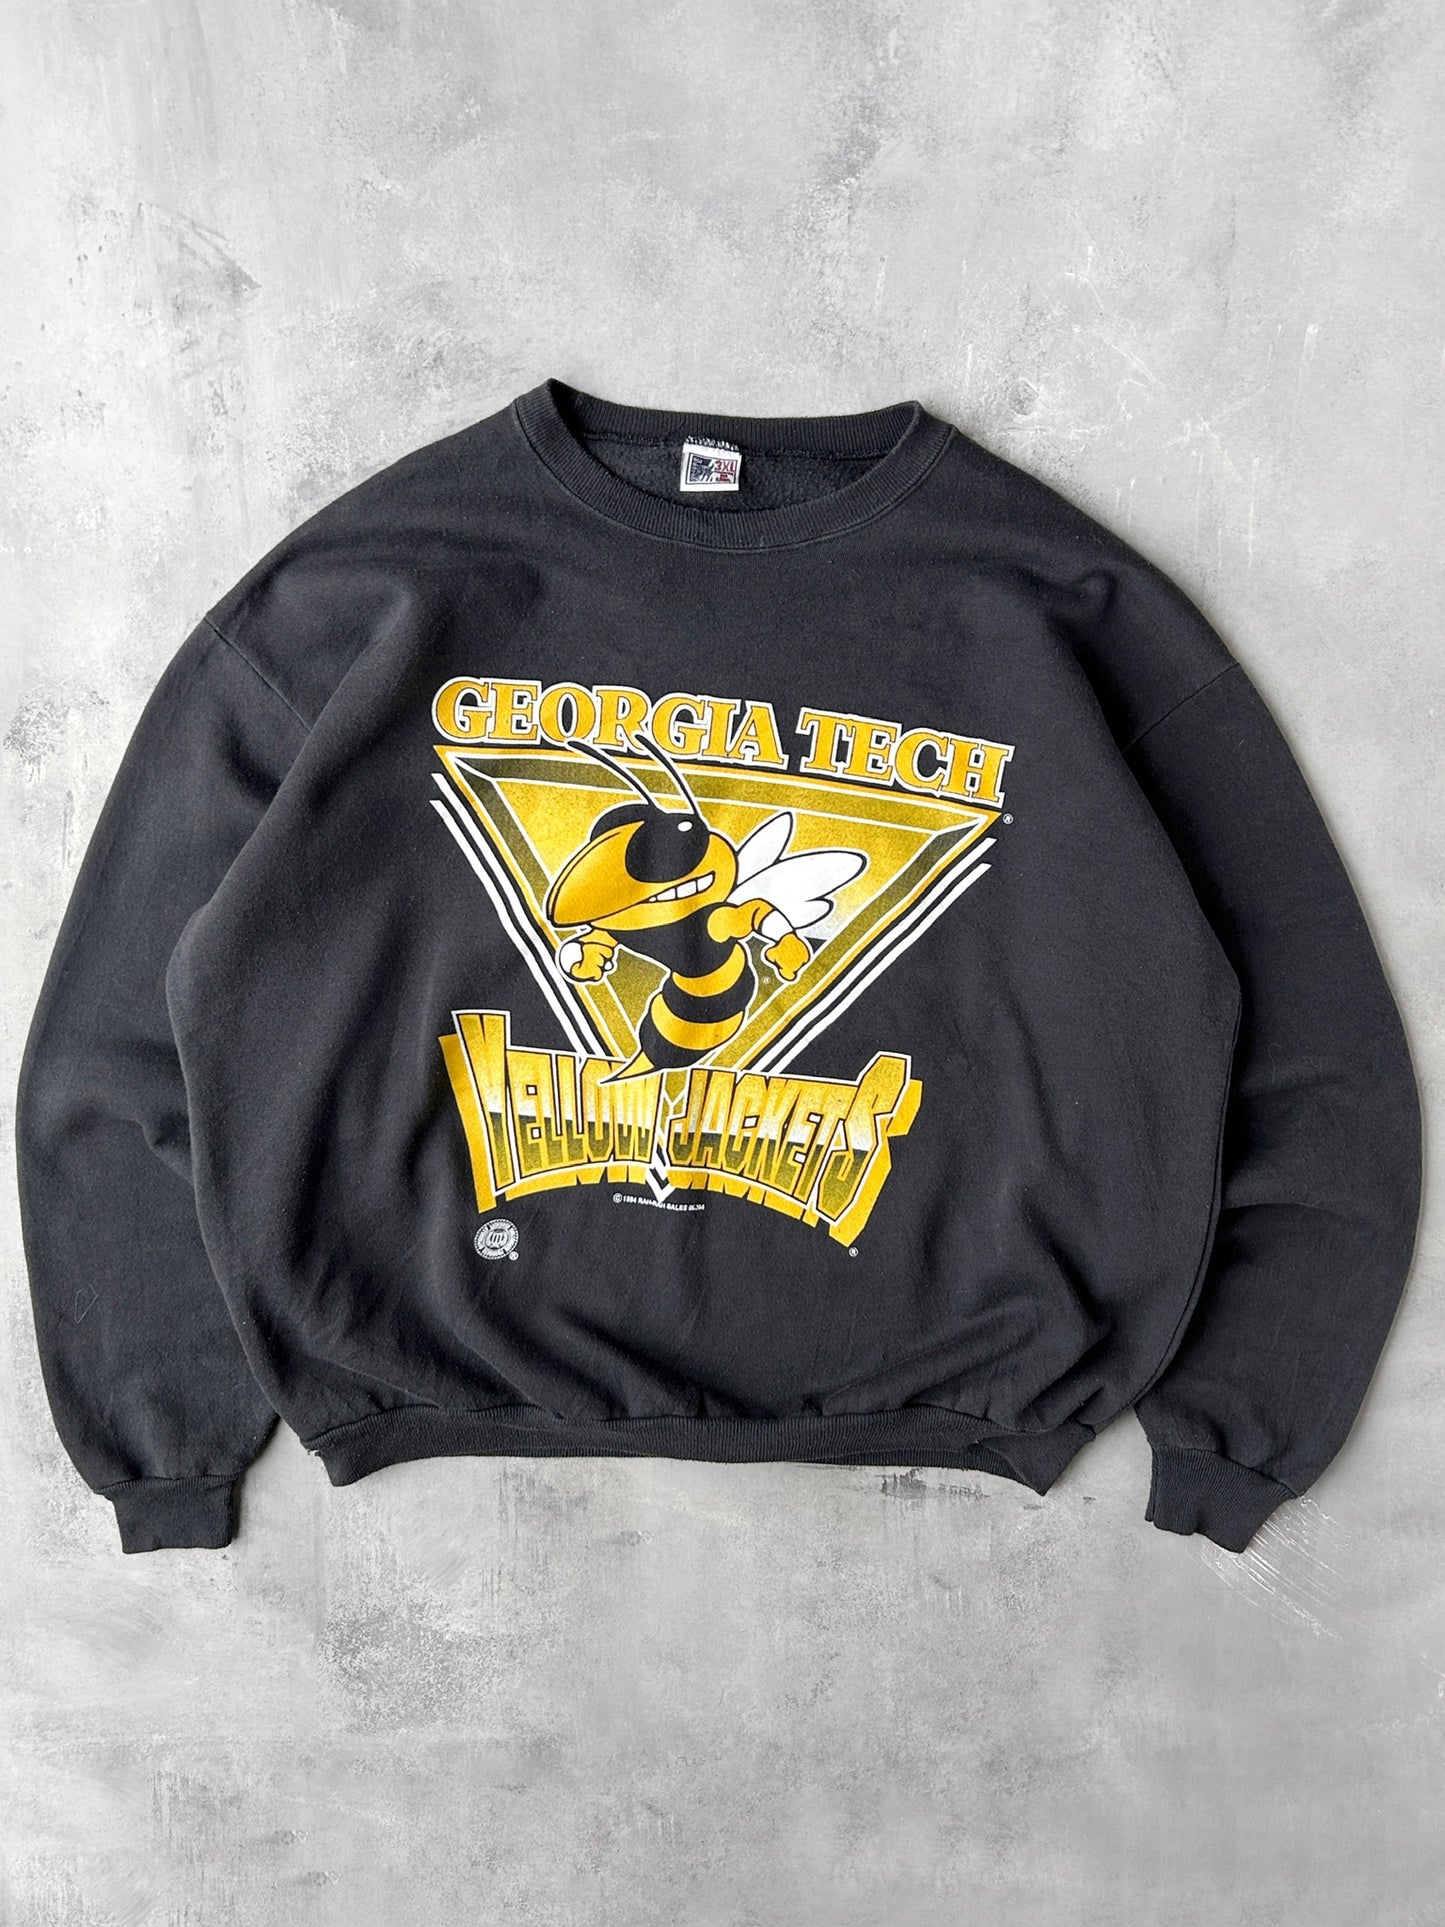 Georgia Tech Sweatshirt 90's - XXL